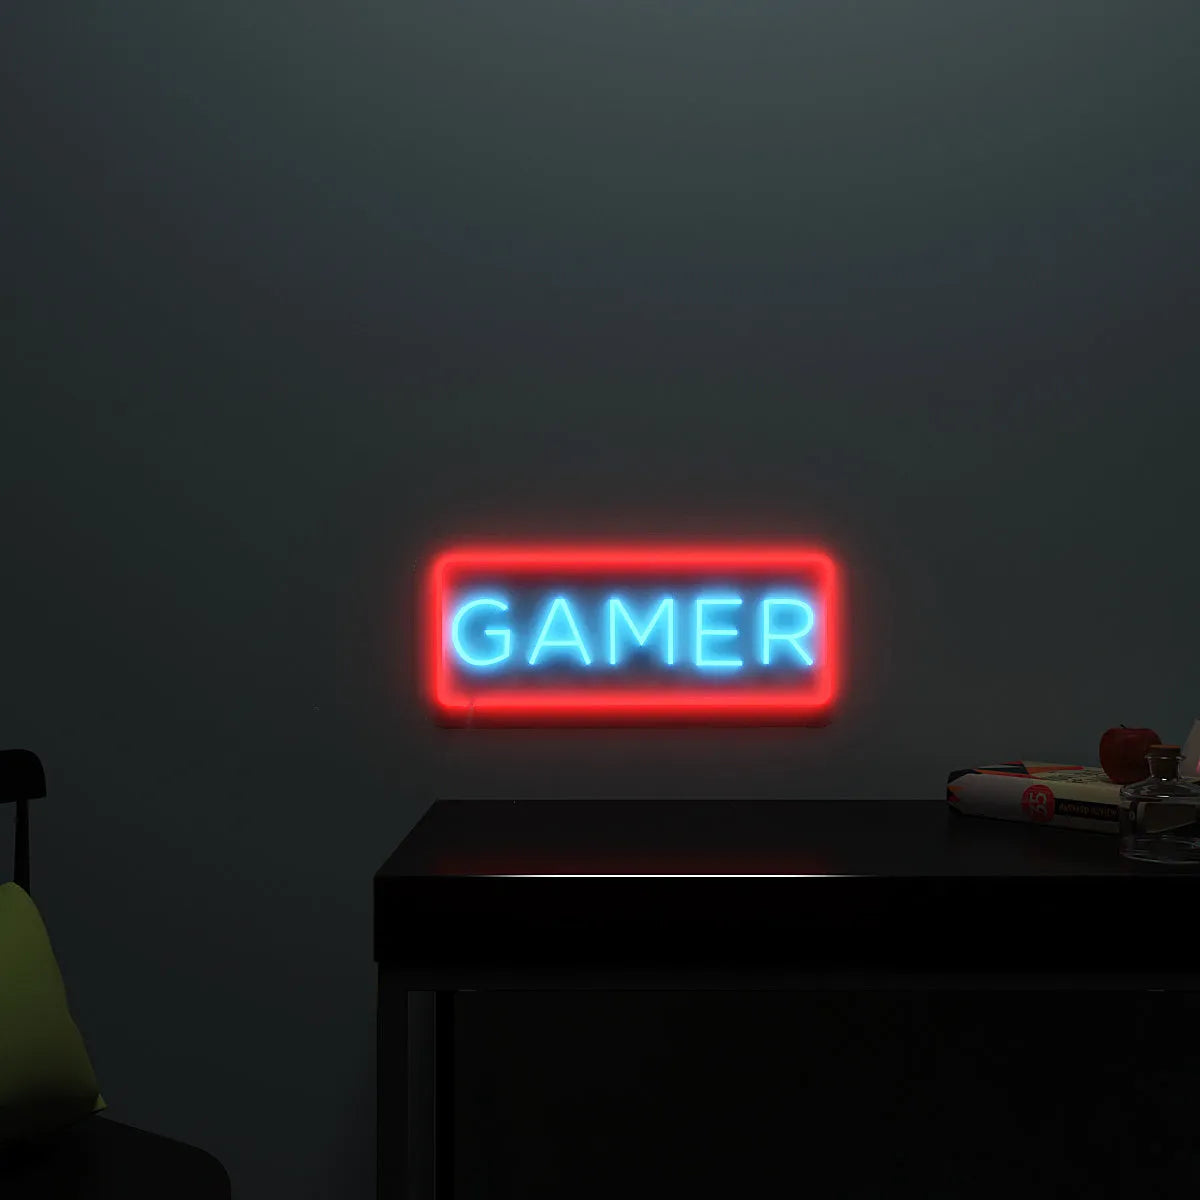 Gamer Neon LED Light